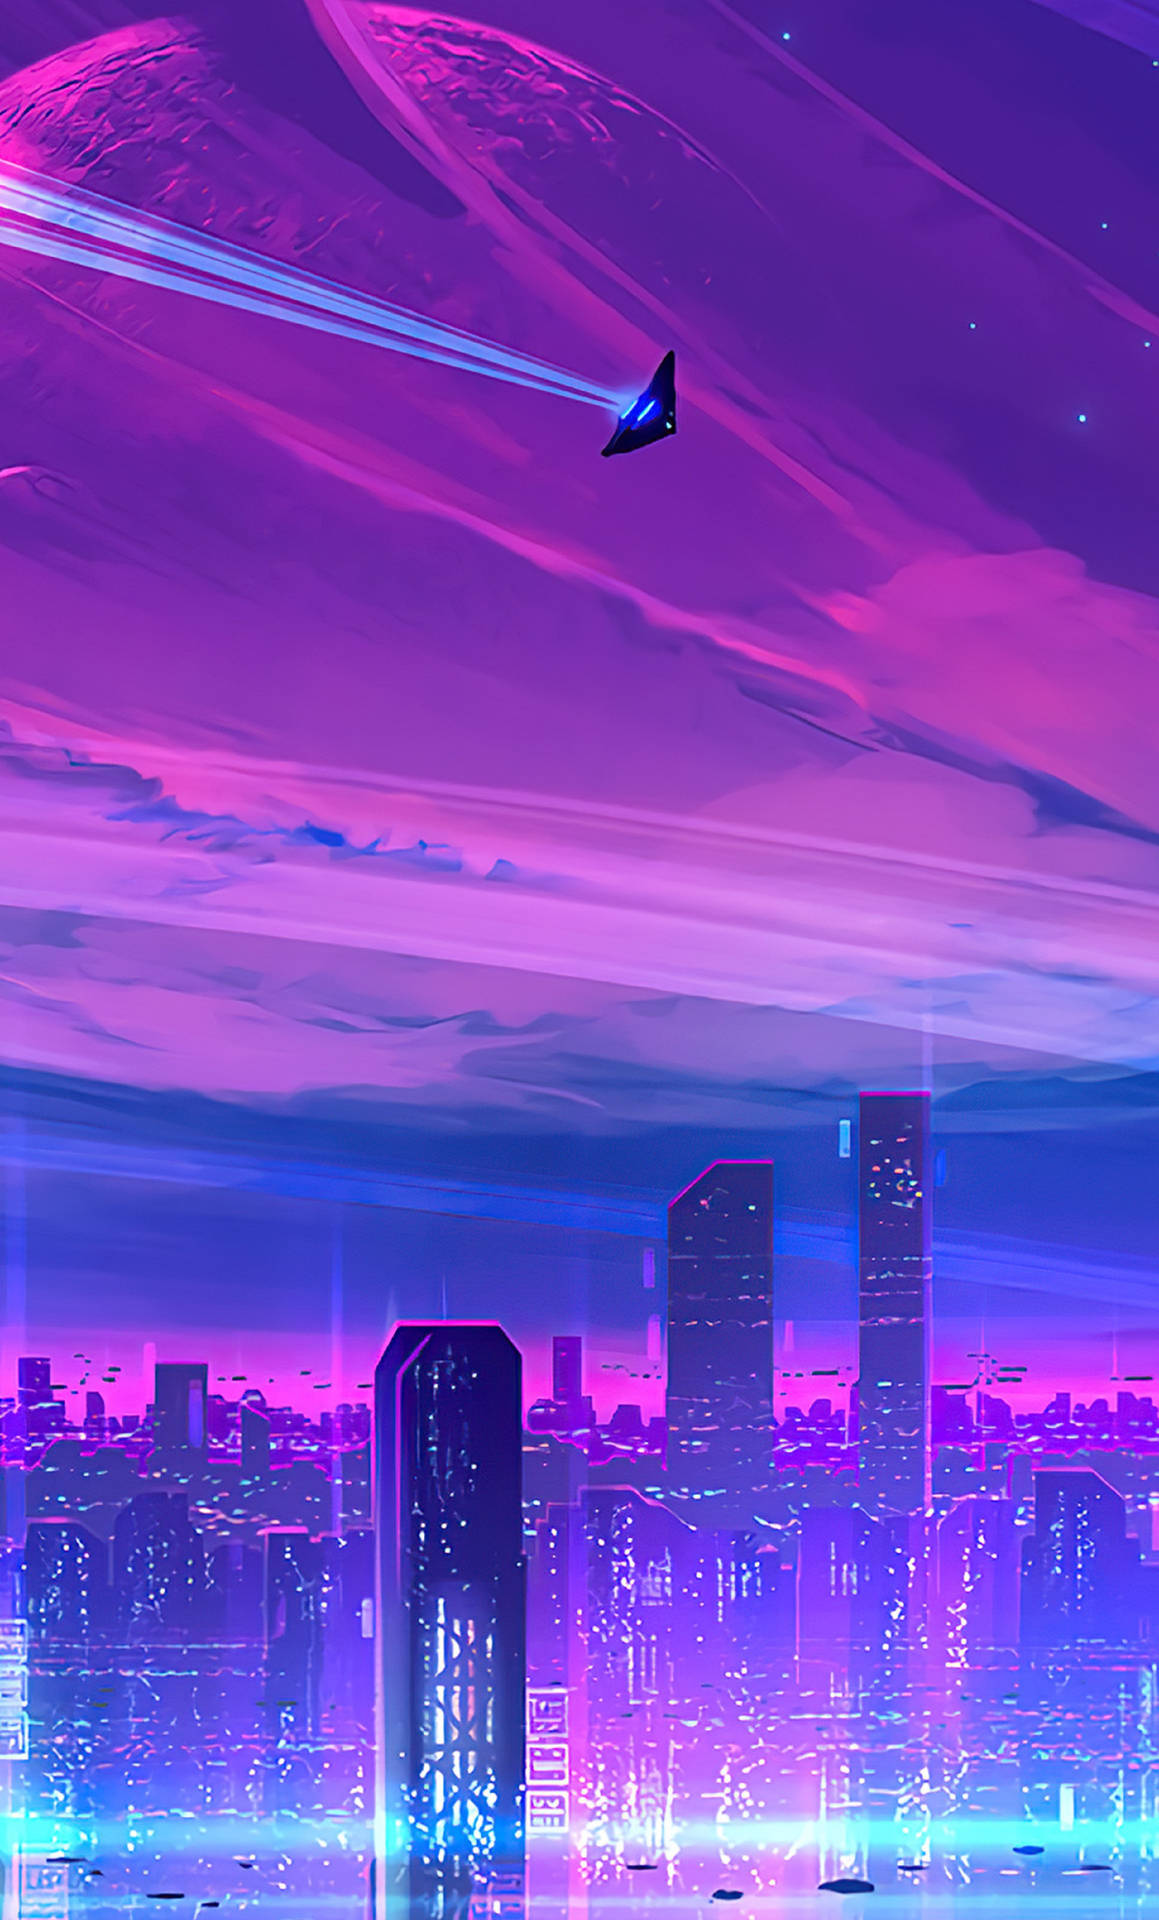 Download 4k Neon iPhone Jet In Neon City Wallpaper